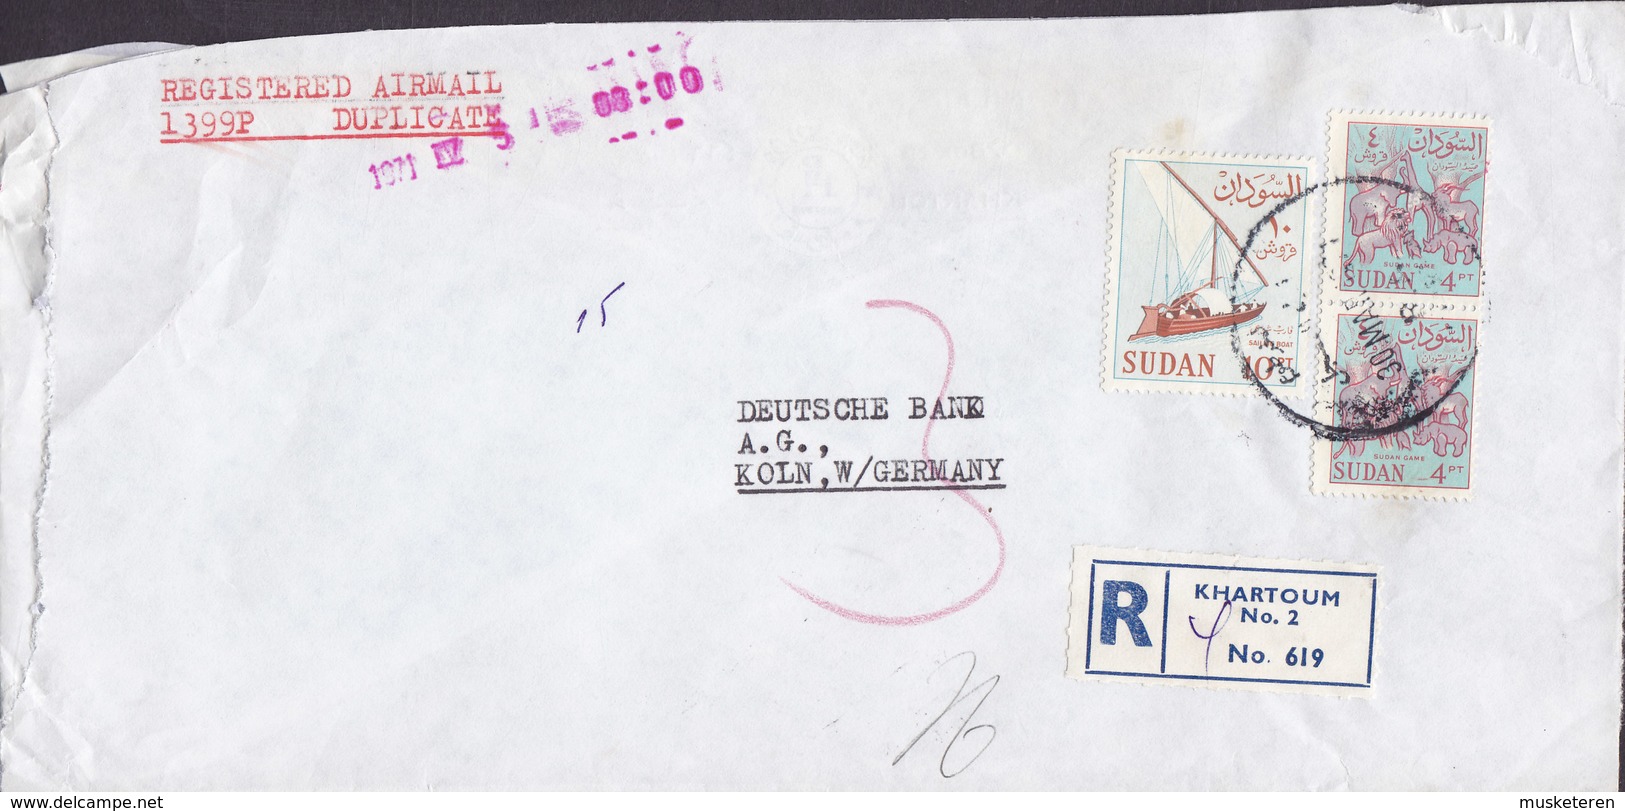 Sudan EL NILEIN BANK Registered Einschreiben Label KHARTOUM 1971 Cover Brief DEUTSCHE BANK Köln Animals 10 Pia Segelboot - Sudan (1954-...)